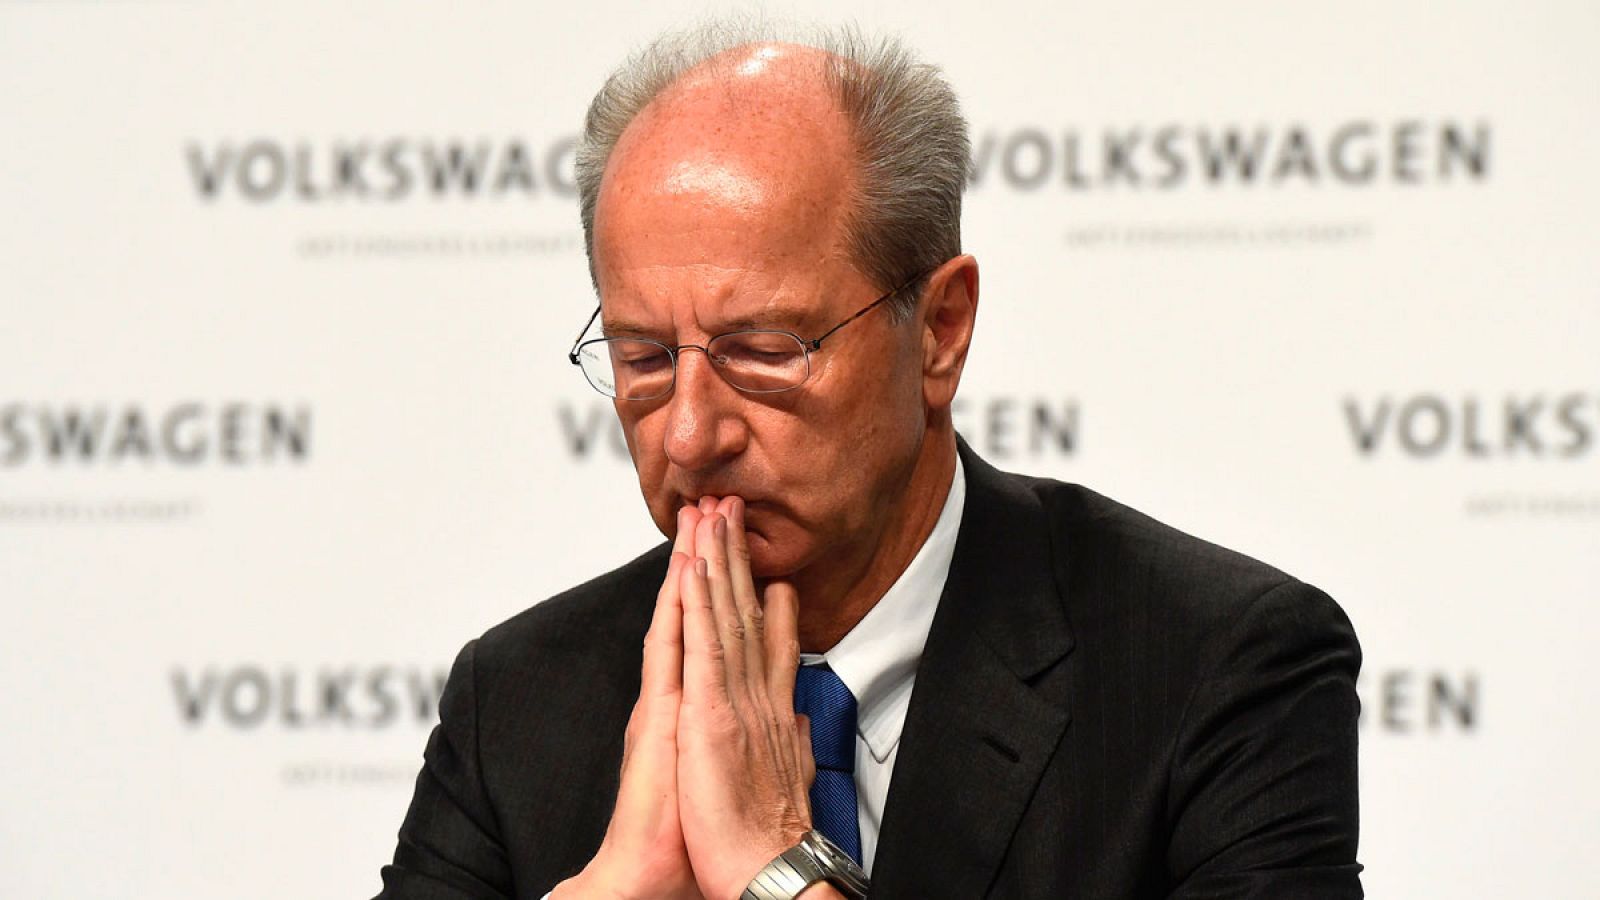 El presidente del consejo de supervisión de Volkswagen, Hans Dieter Pötsch, en una imagen de archivo